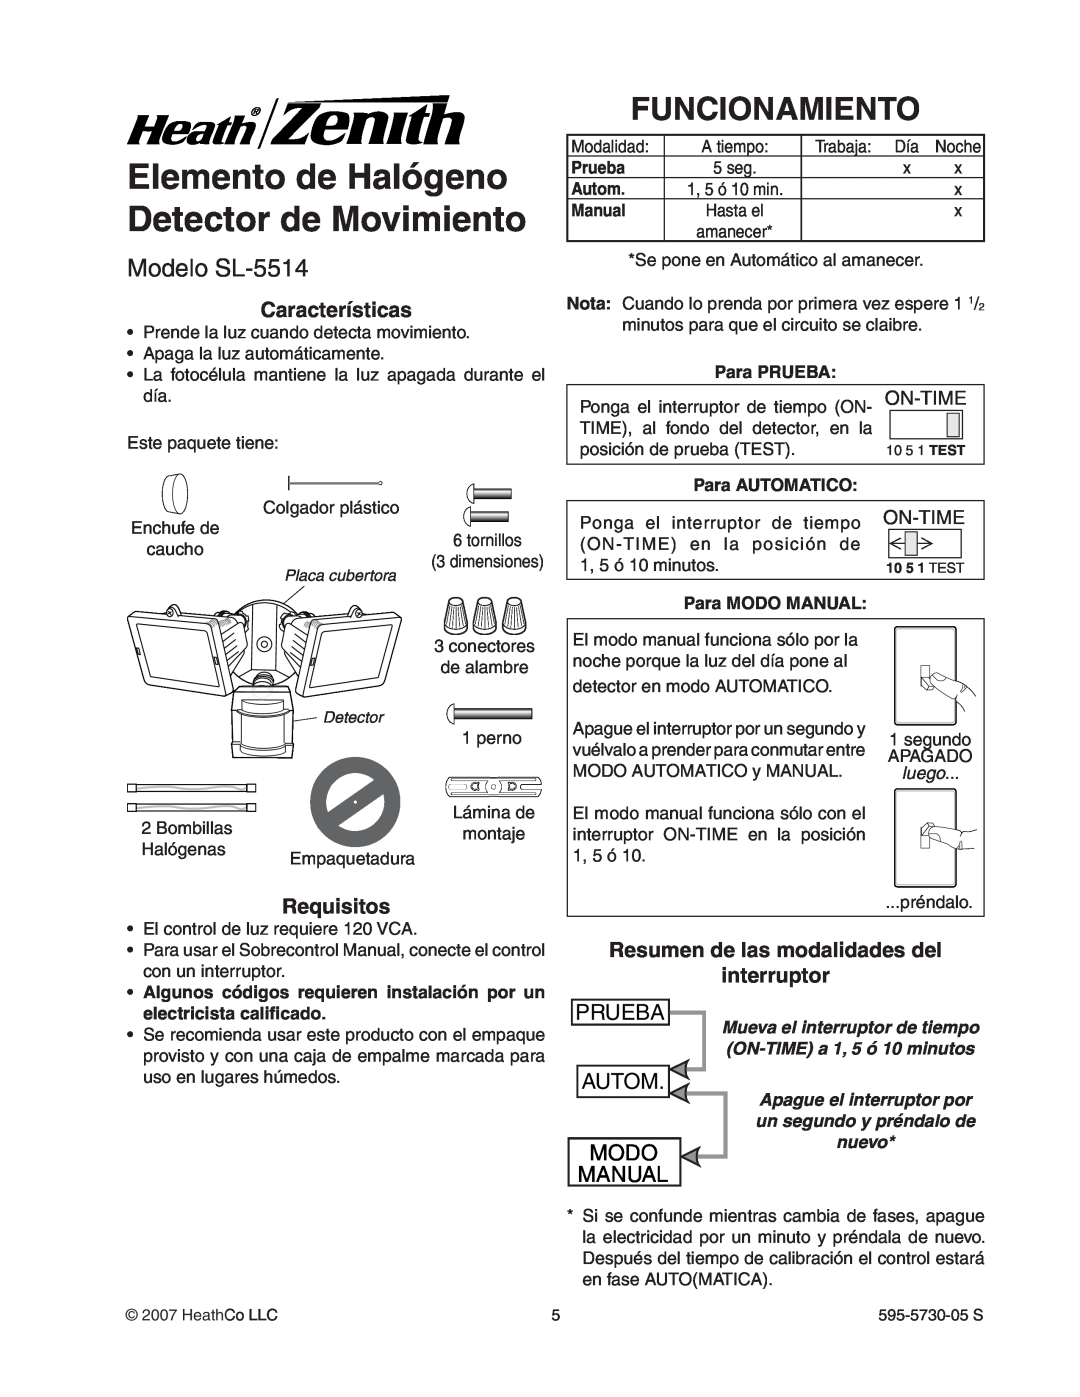 Heath Zenith Elemento de Halógeno Detector de Movimiento, Funcionamiento, Modelo SL-5514, Prueba, Autom, Modo, Manual 